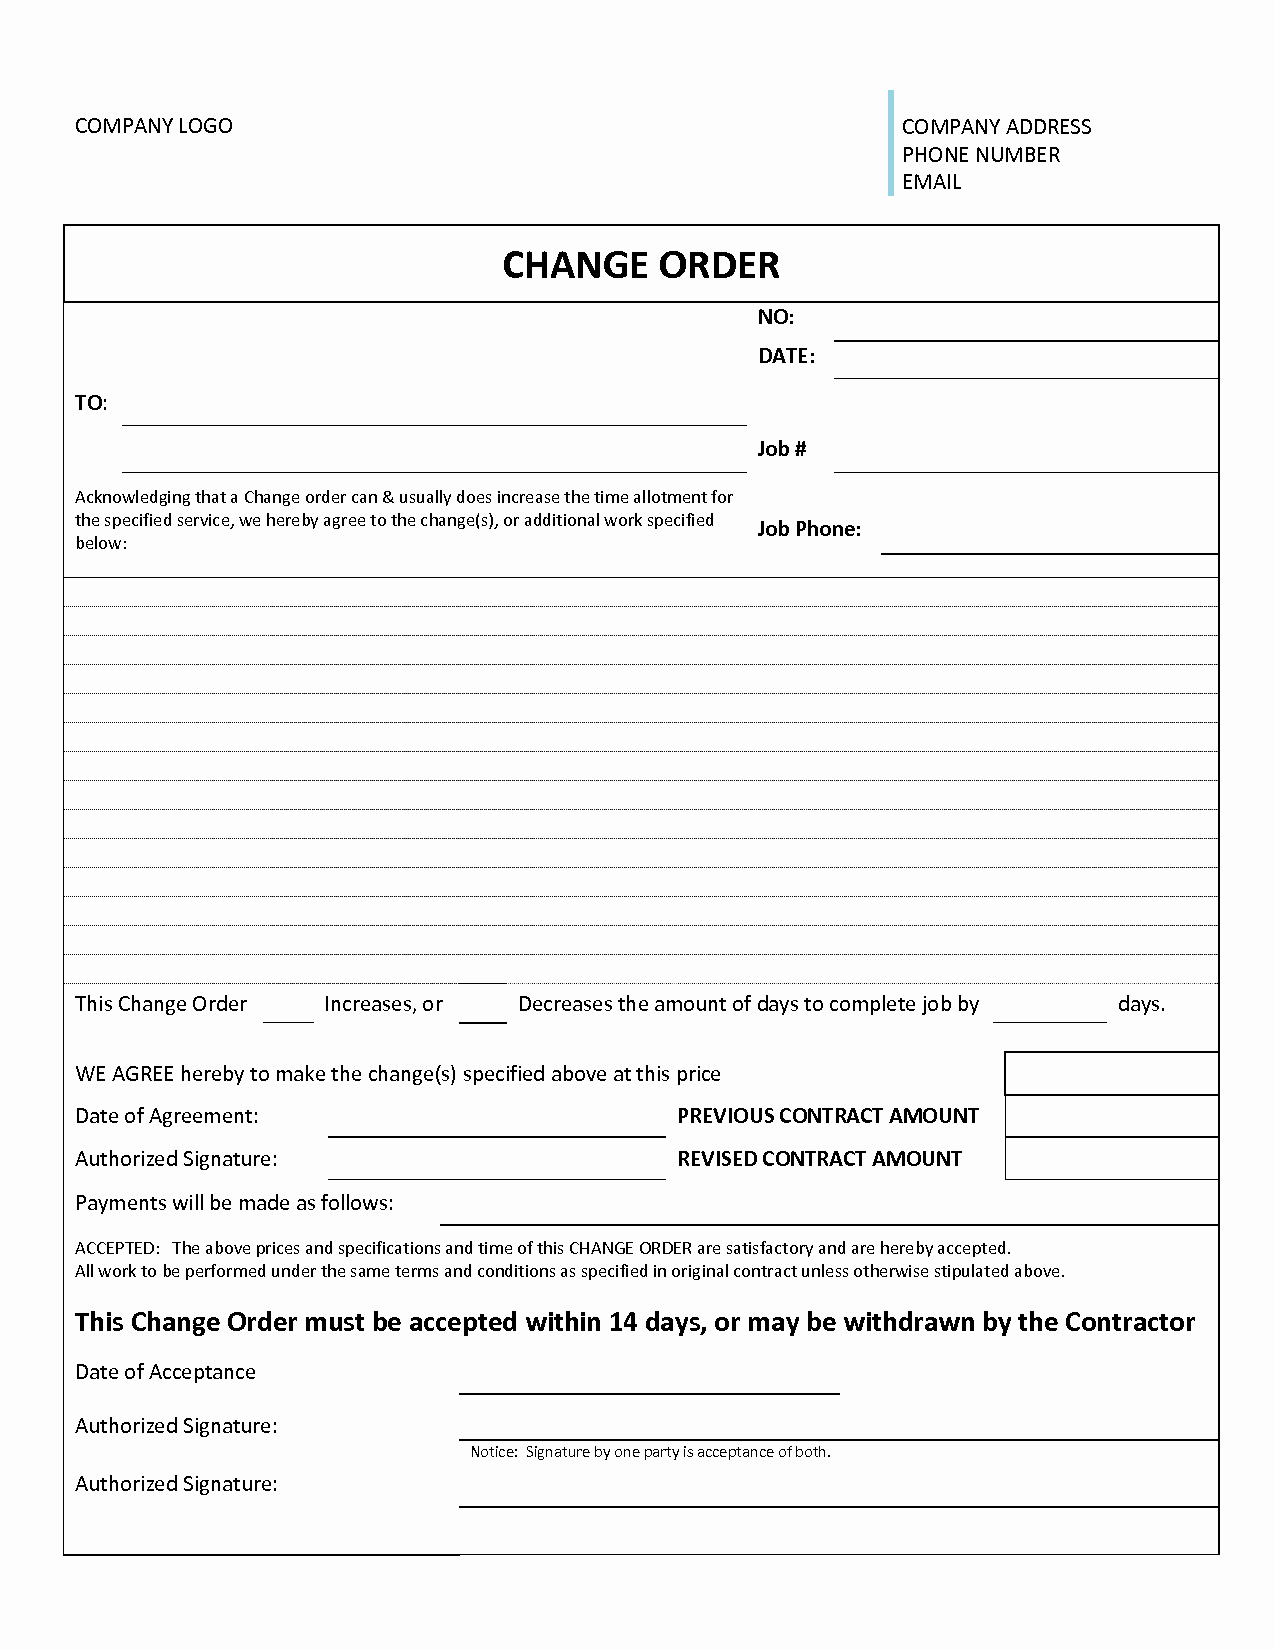 Change order form